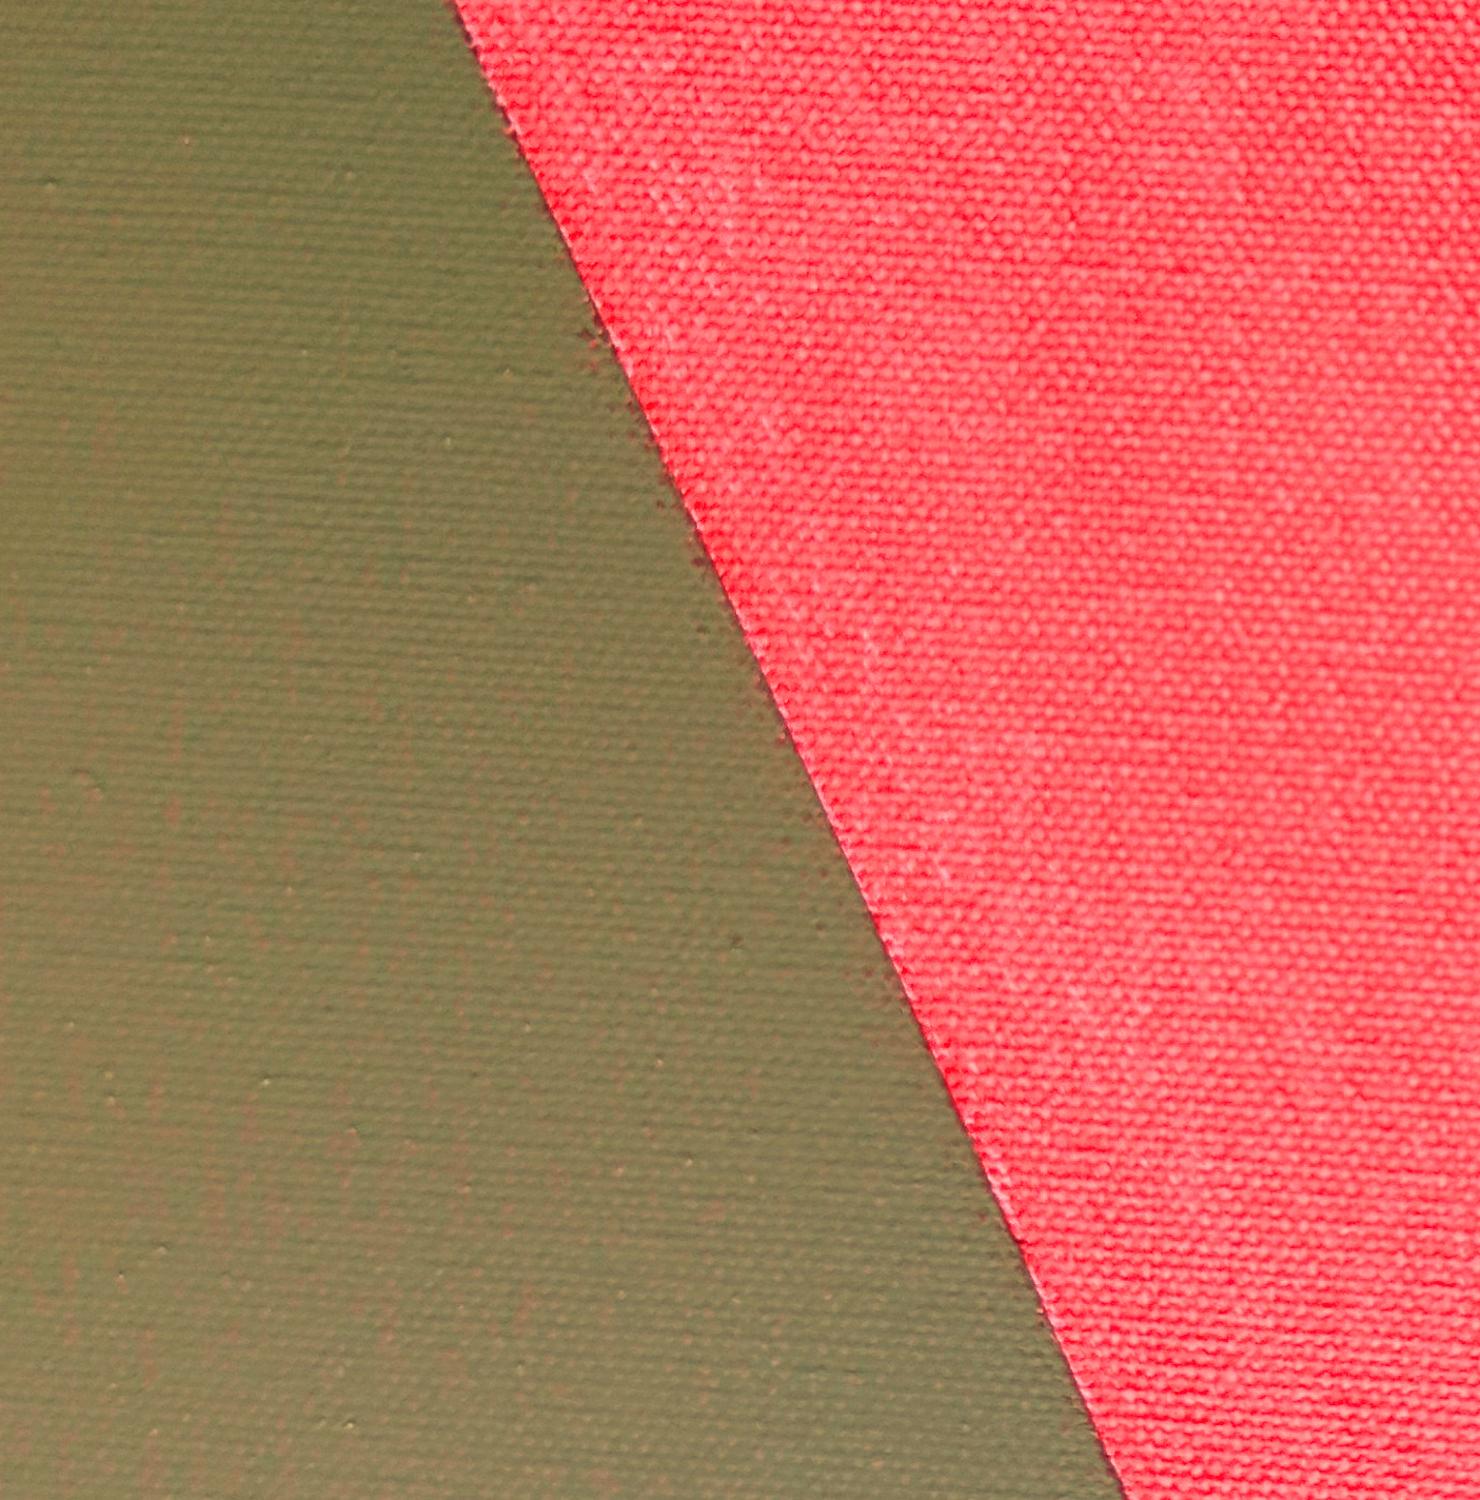 <p>Commentaires de l'artisteCette peinture abstraite représente une forme linéaire rouge sur un fond brun.<br> Il s'inspire d'un caractère chinois qui signifie 